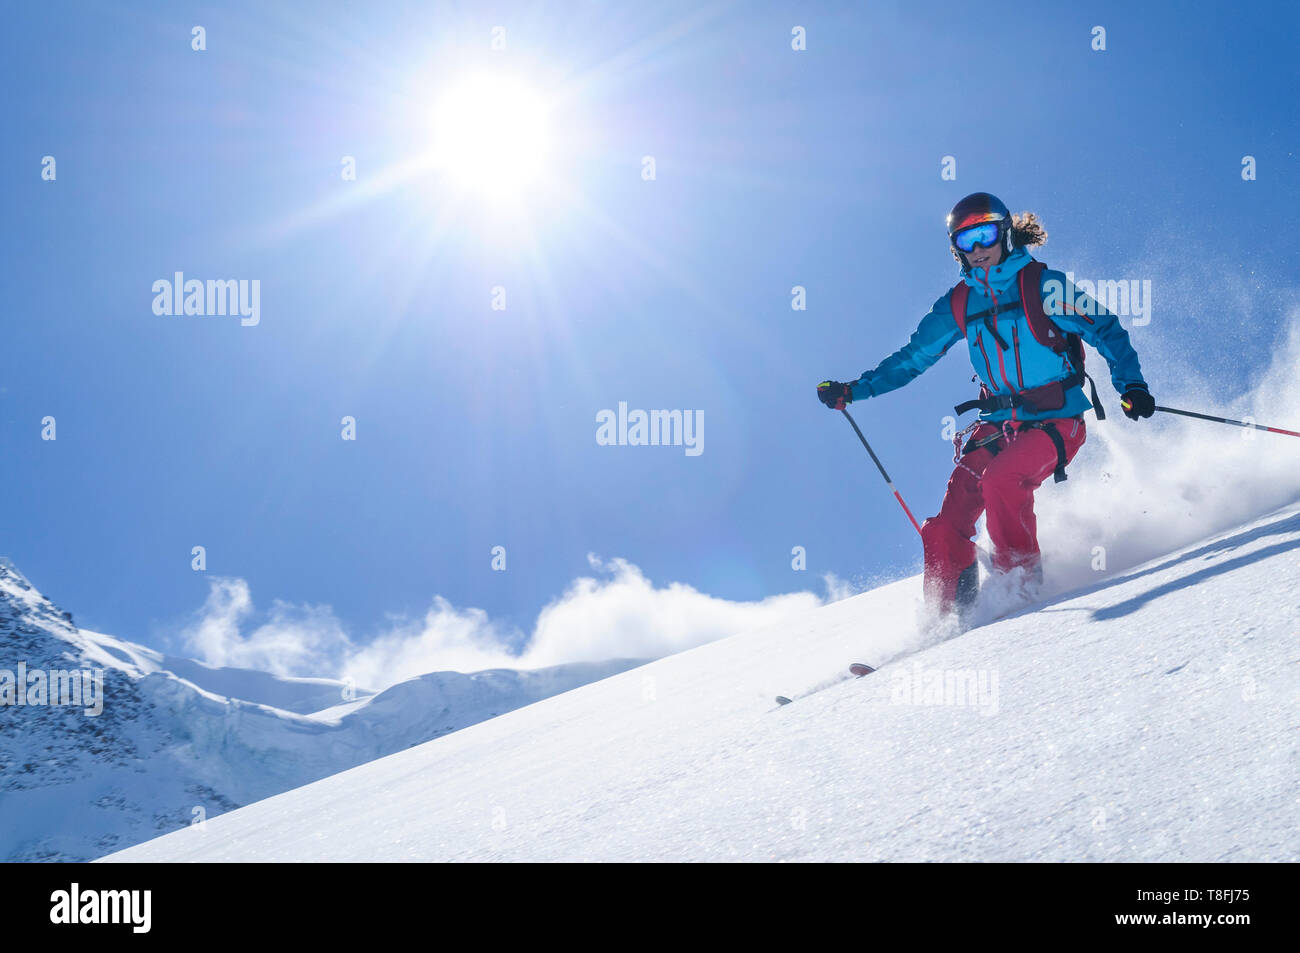 Freeskieur femelle dans l'arrière-pays du ski sur les glaciers du Mont Rose fantastique Banque D'Images